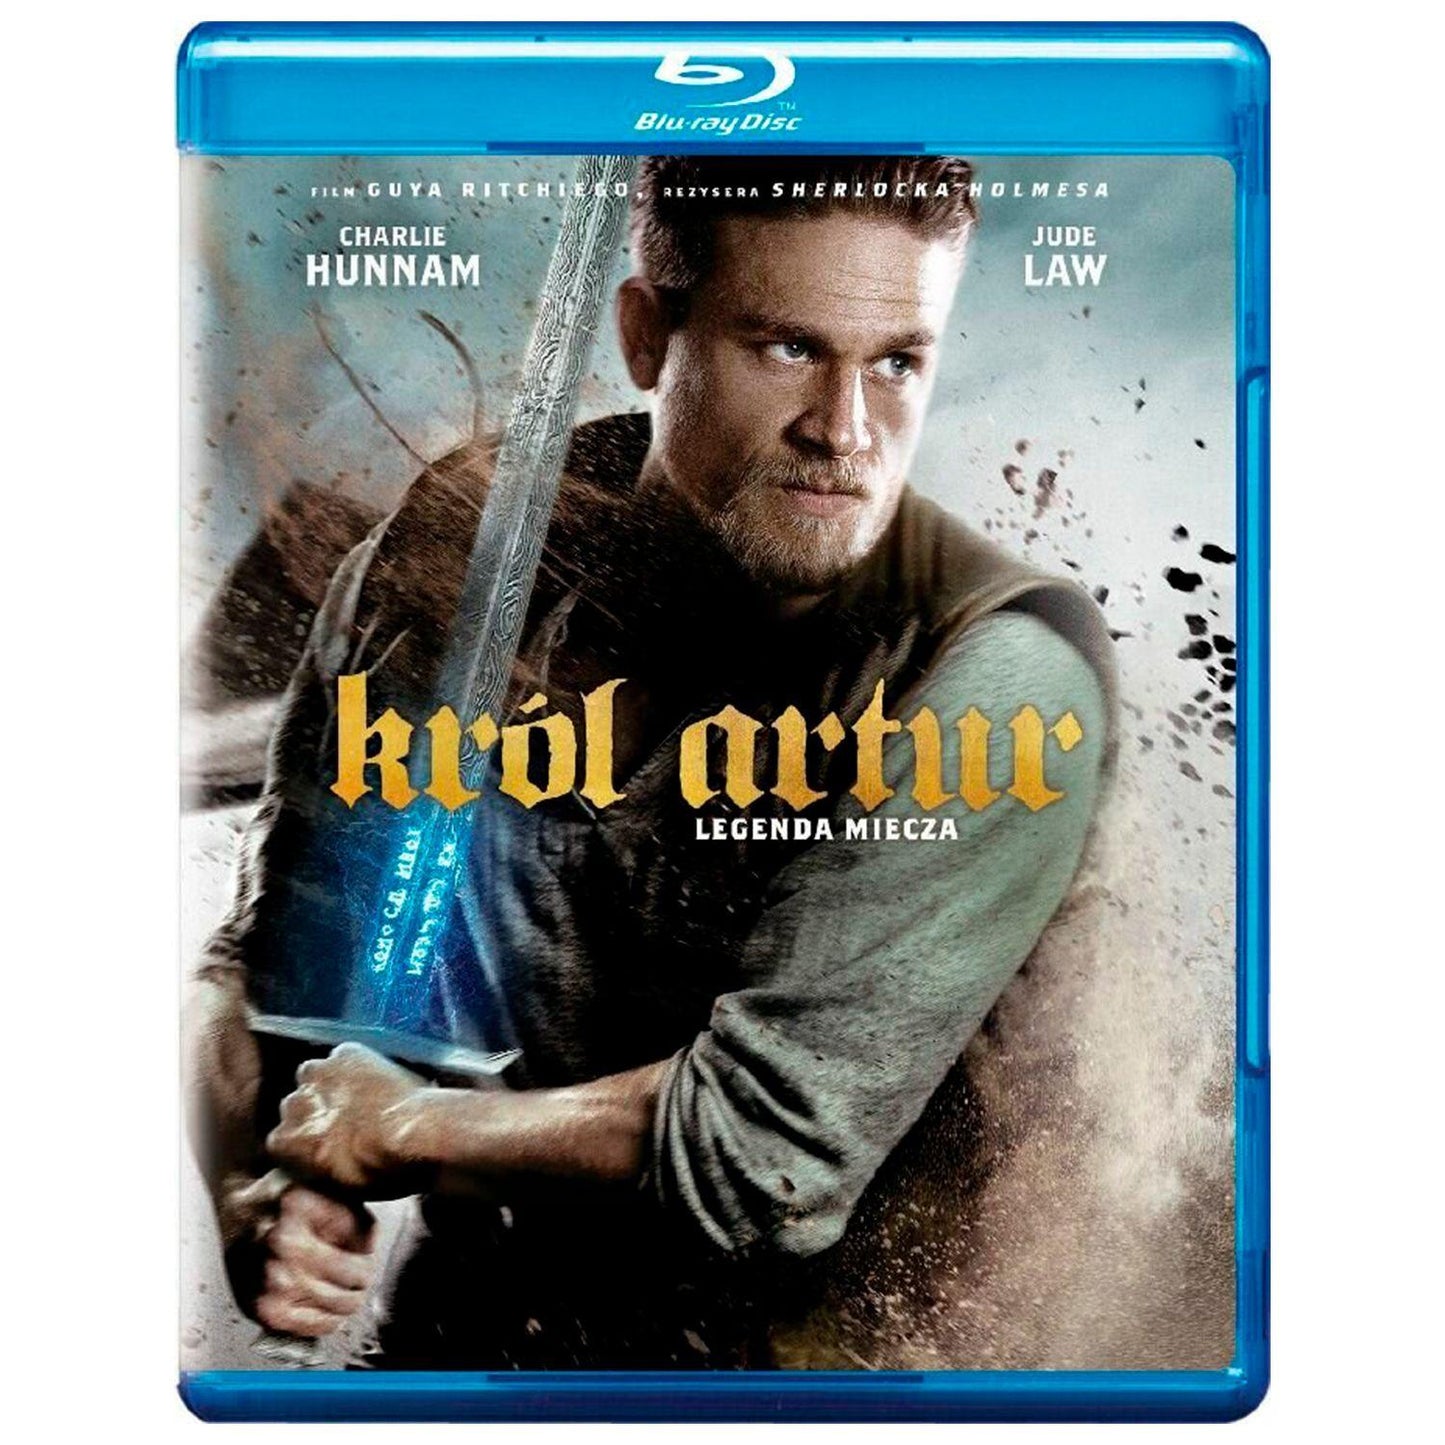 Меч короля Артура (Blu-ray)